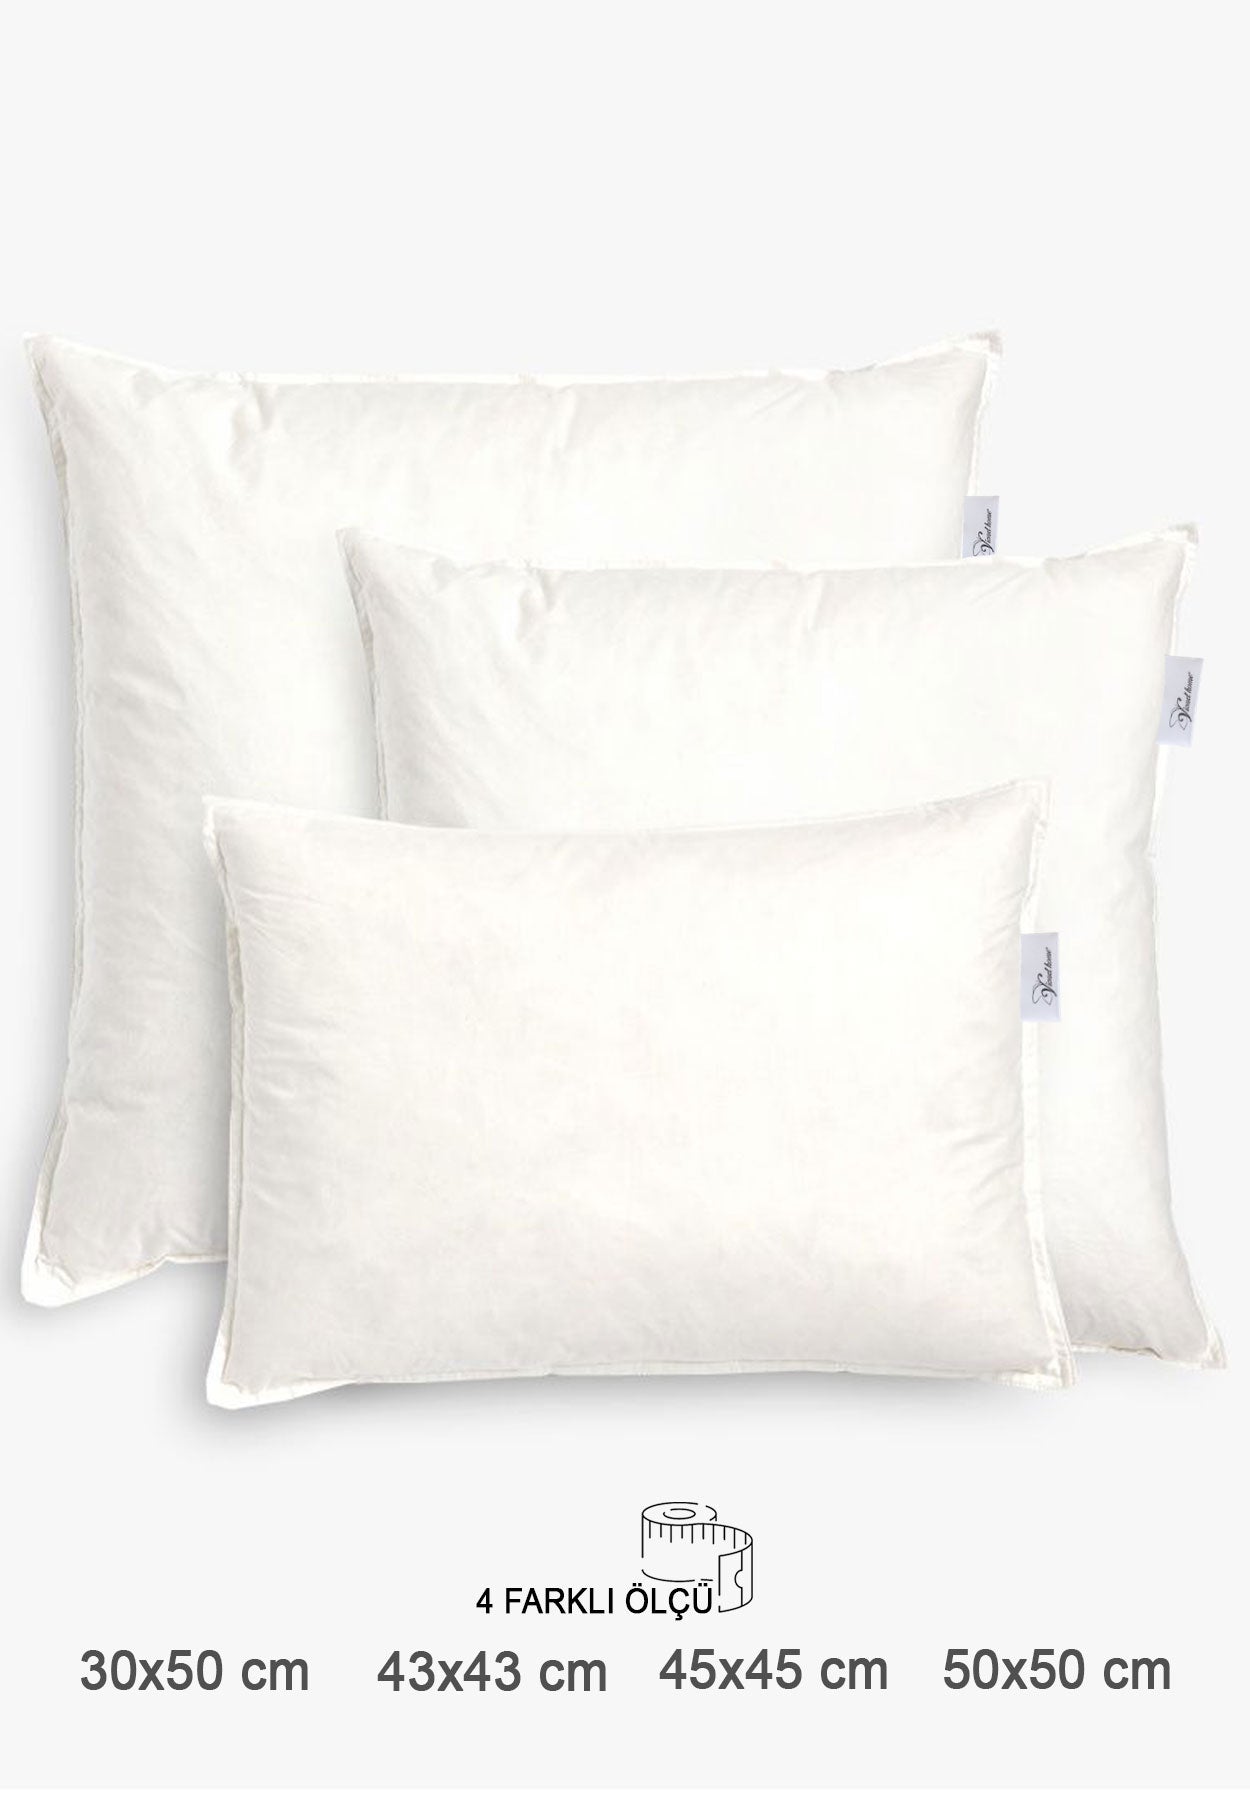 Vionel Home Premium Kare Kırlent İç Yastık 1.kalite Elyaf Dolgulu Koltuk Yastığı,45x45,43x43,30x50,50x50